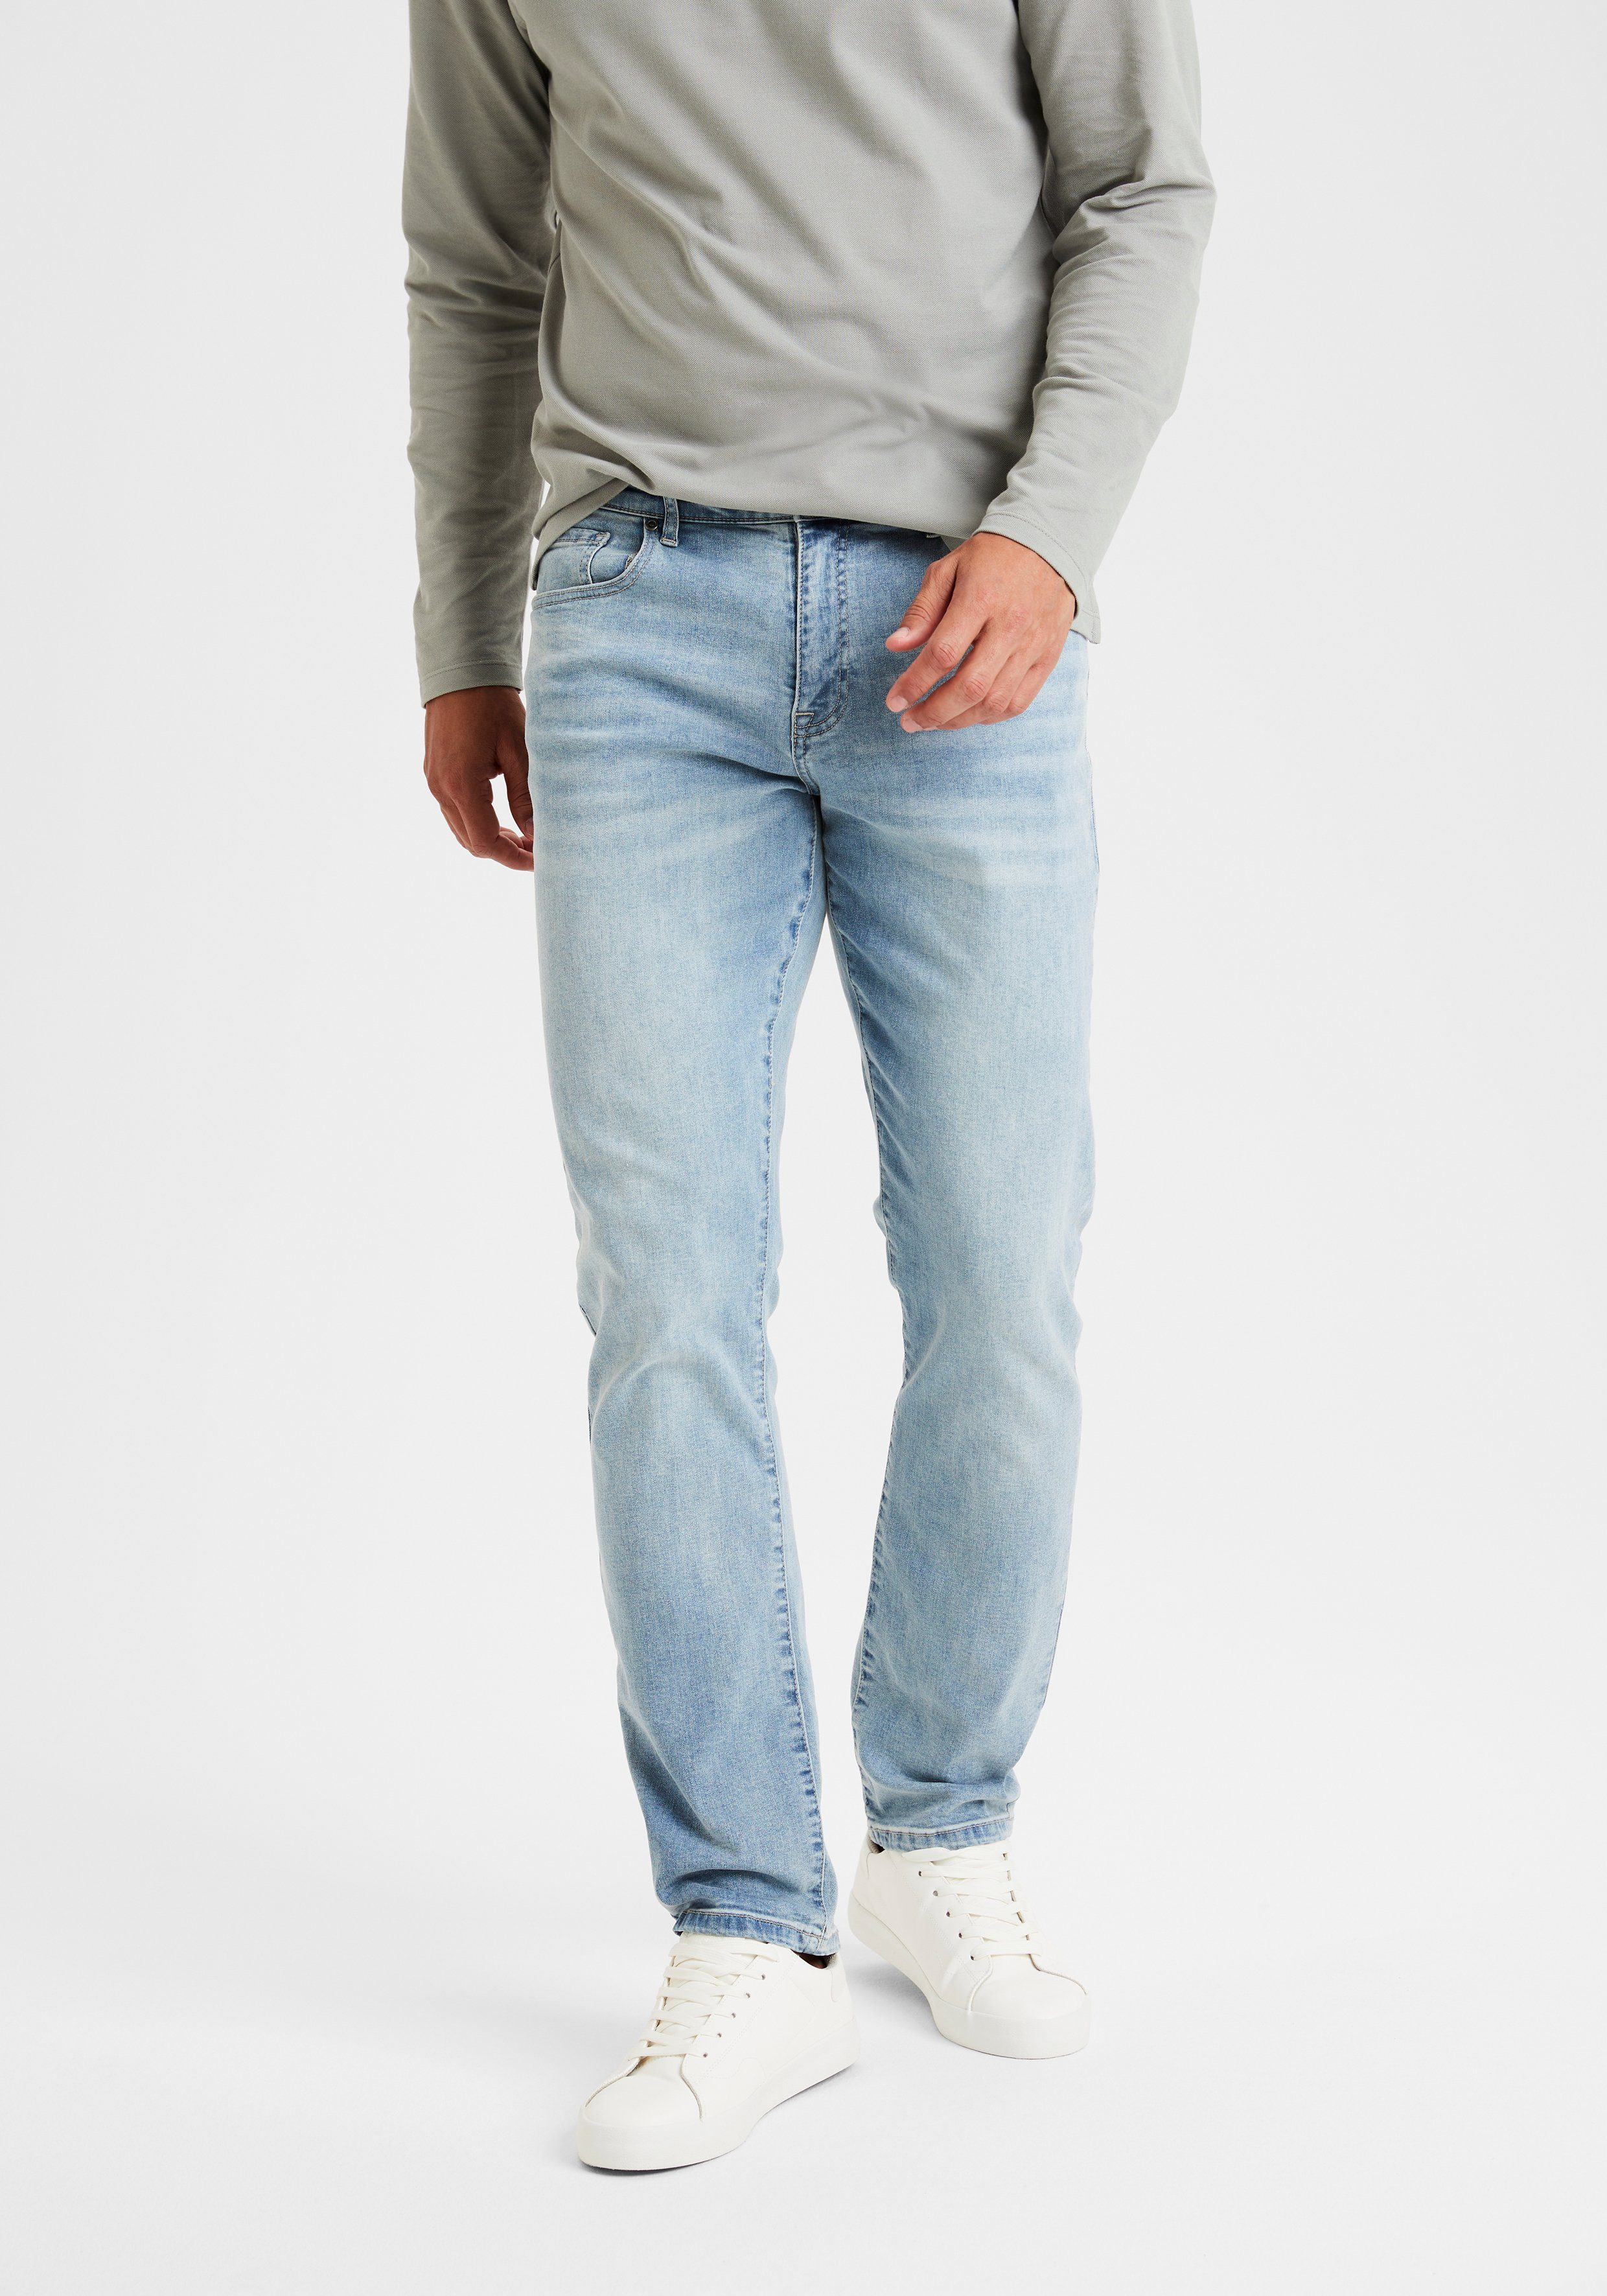 Buffalo 5-Pocket-Jeans Straight-fit Jeans mit normaler Bundhöhe, elastische Denim-Qualität